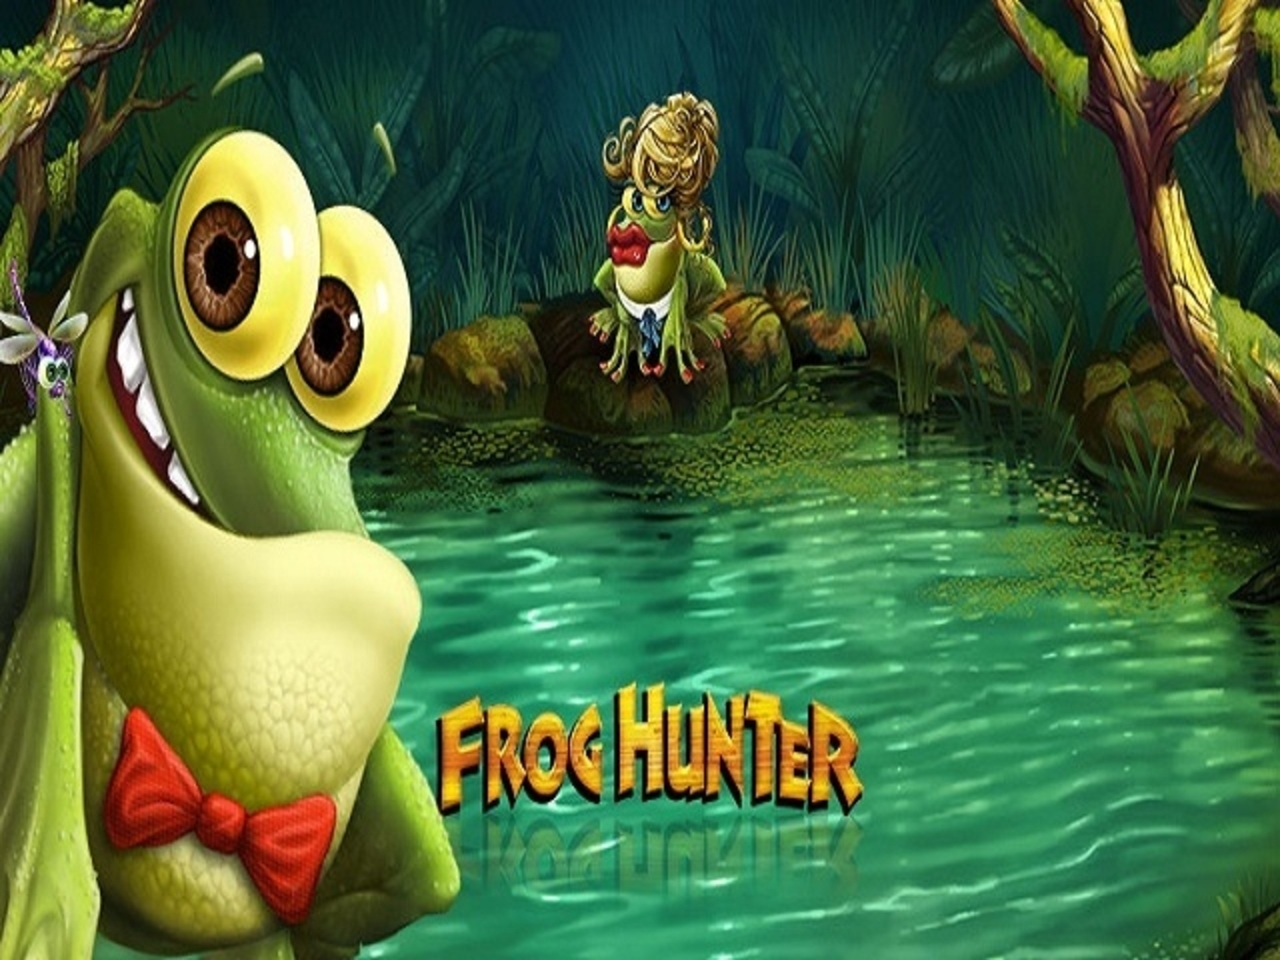 Frog Hunter demo